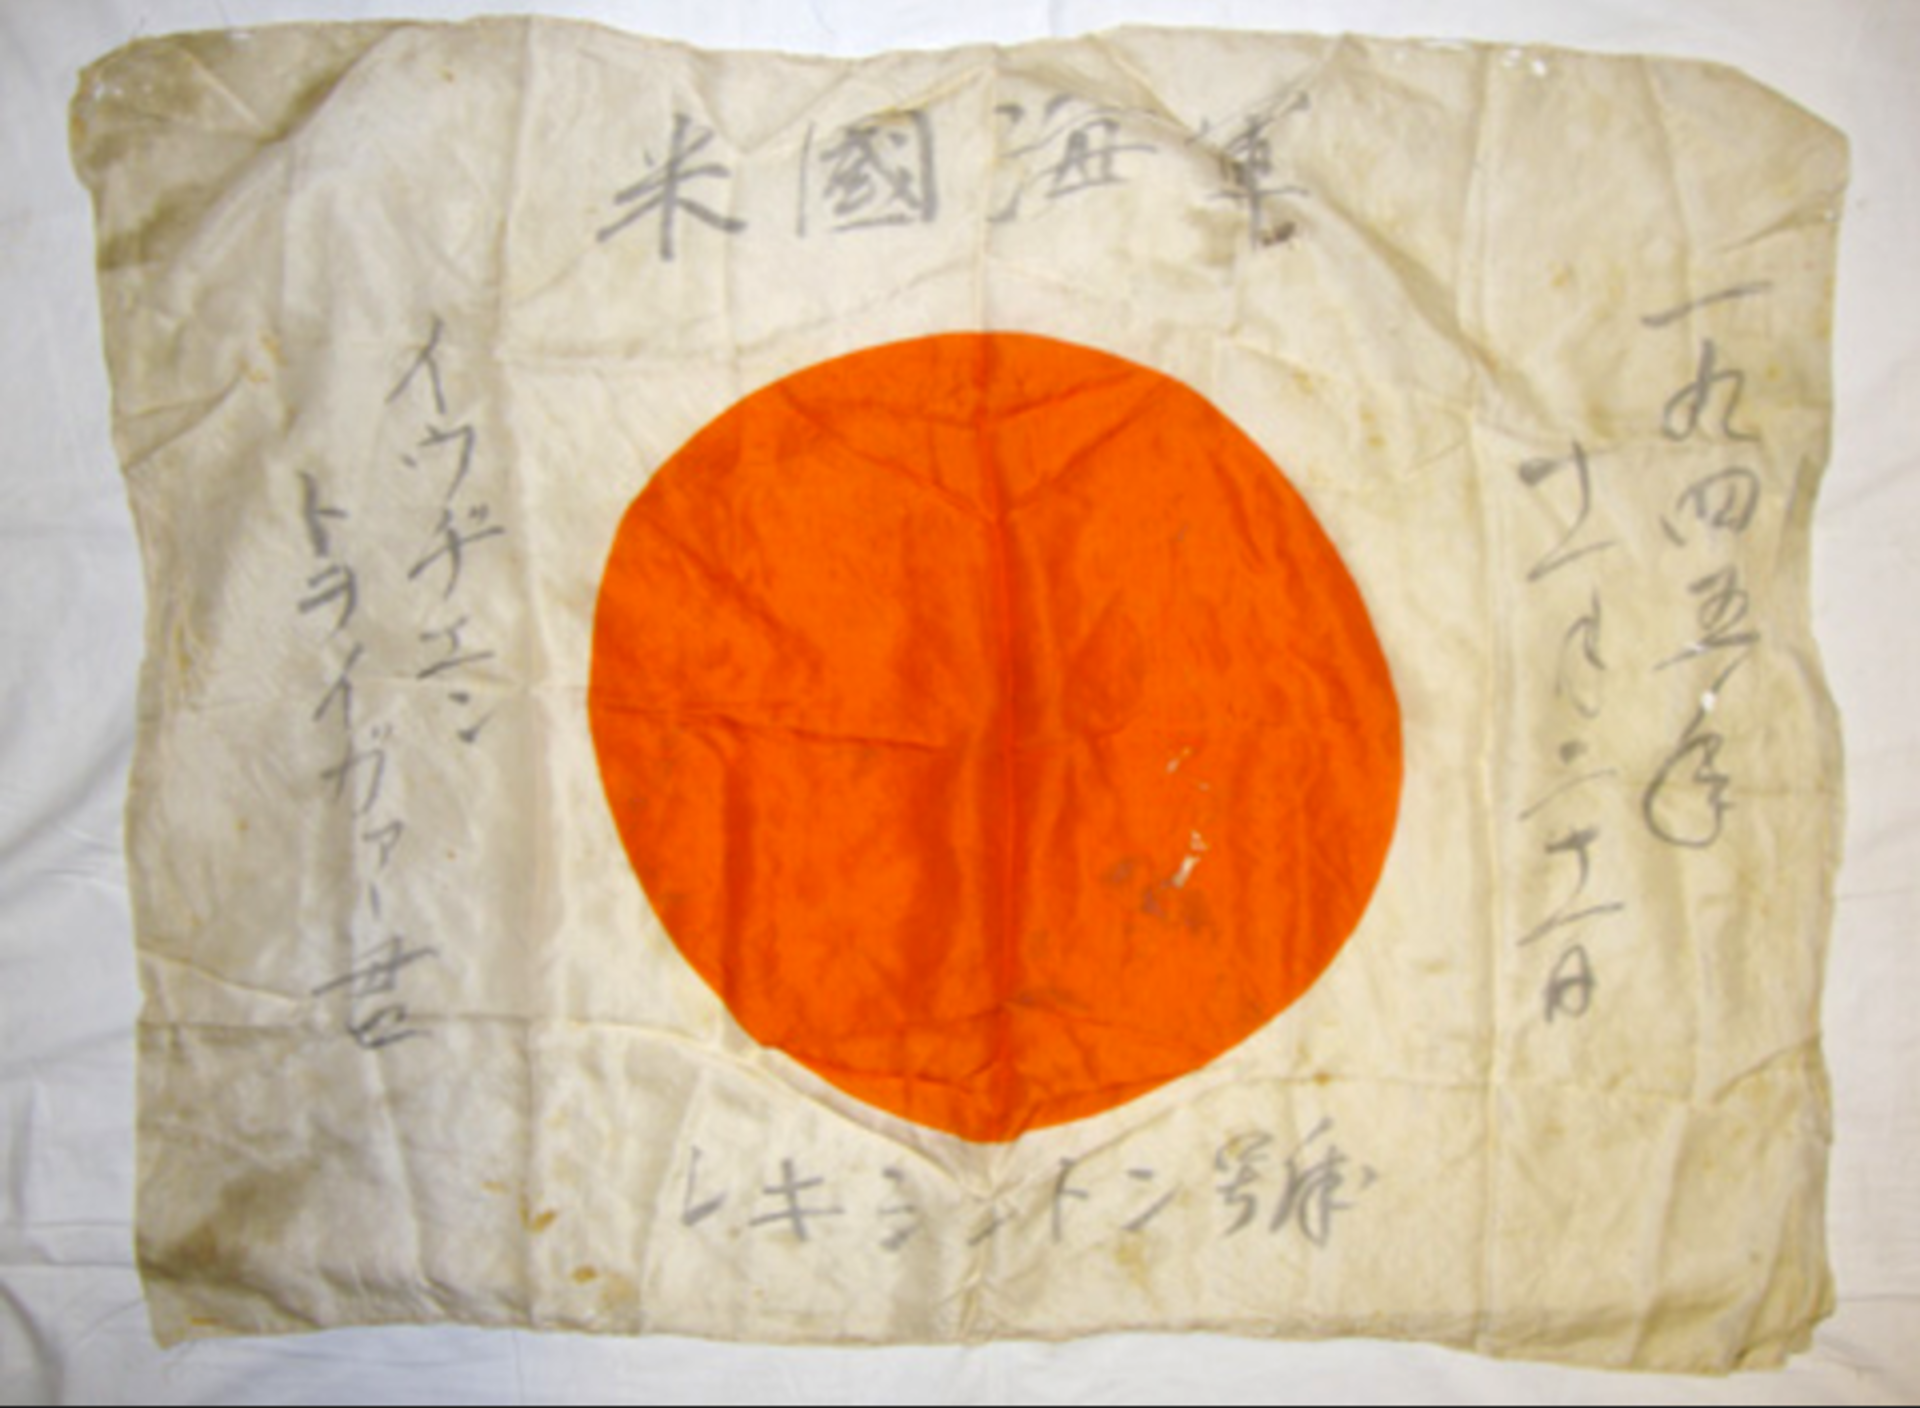 WW2 Japanese Battle Flag. Misc 776. misc 776 An original 36" x 26" WW2 Japanese Battle Flag - Image 2 of 2